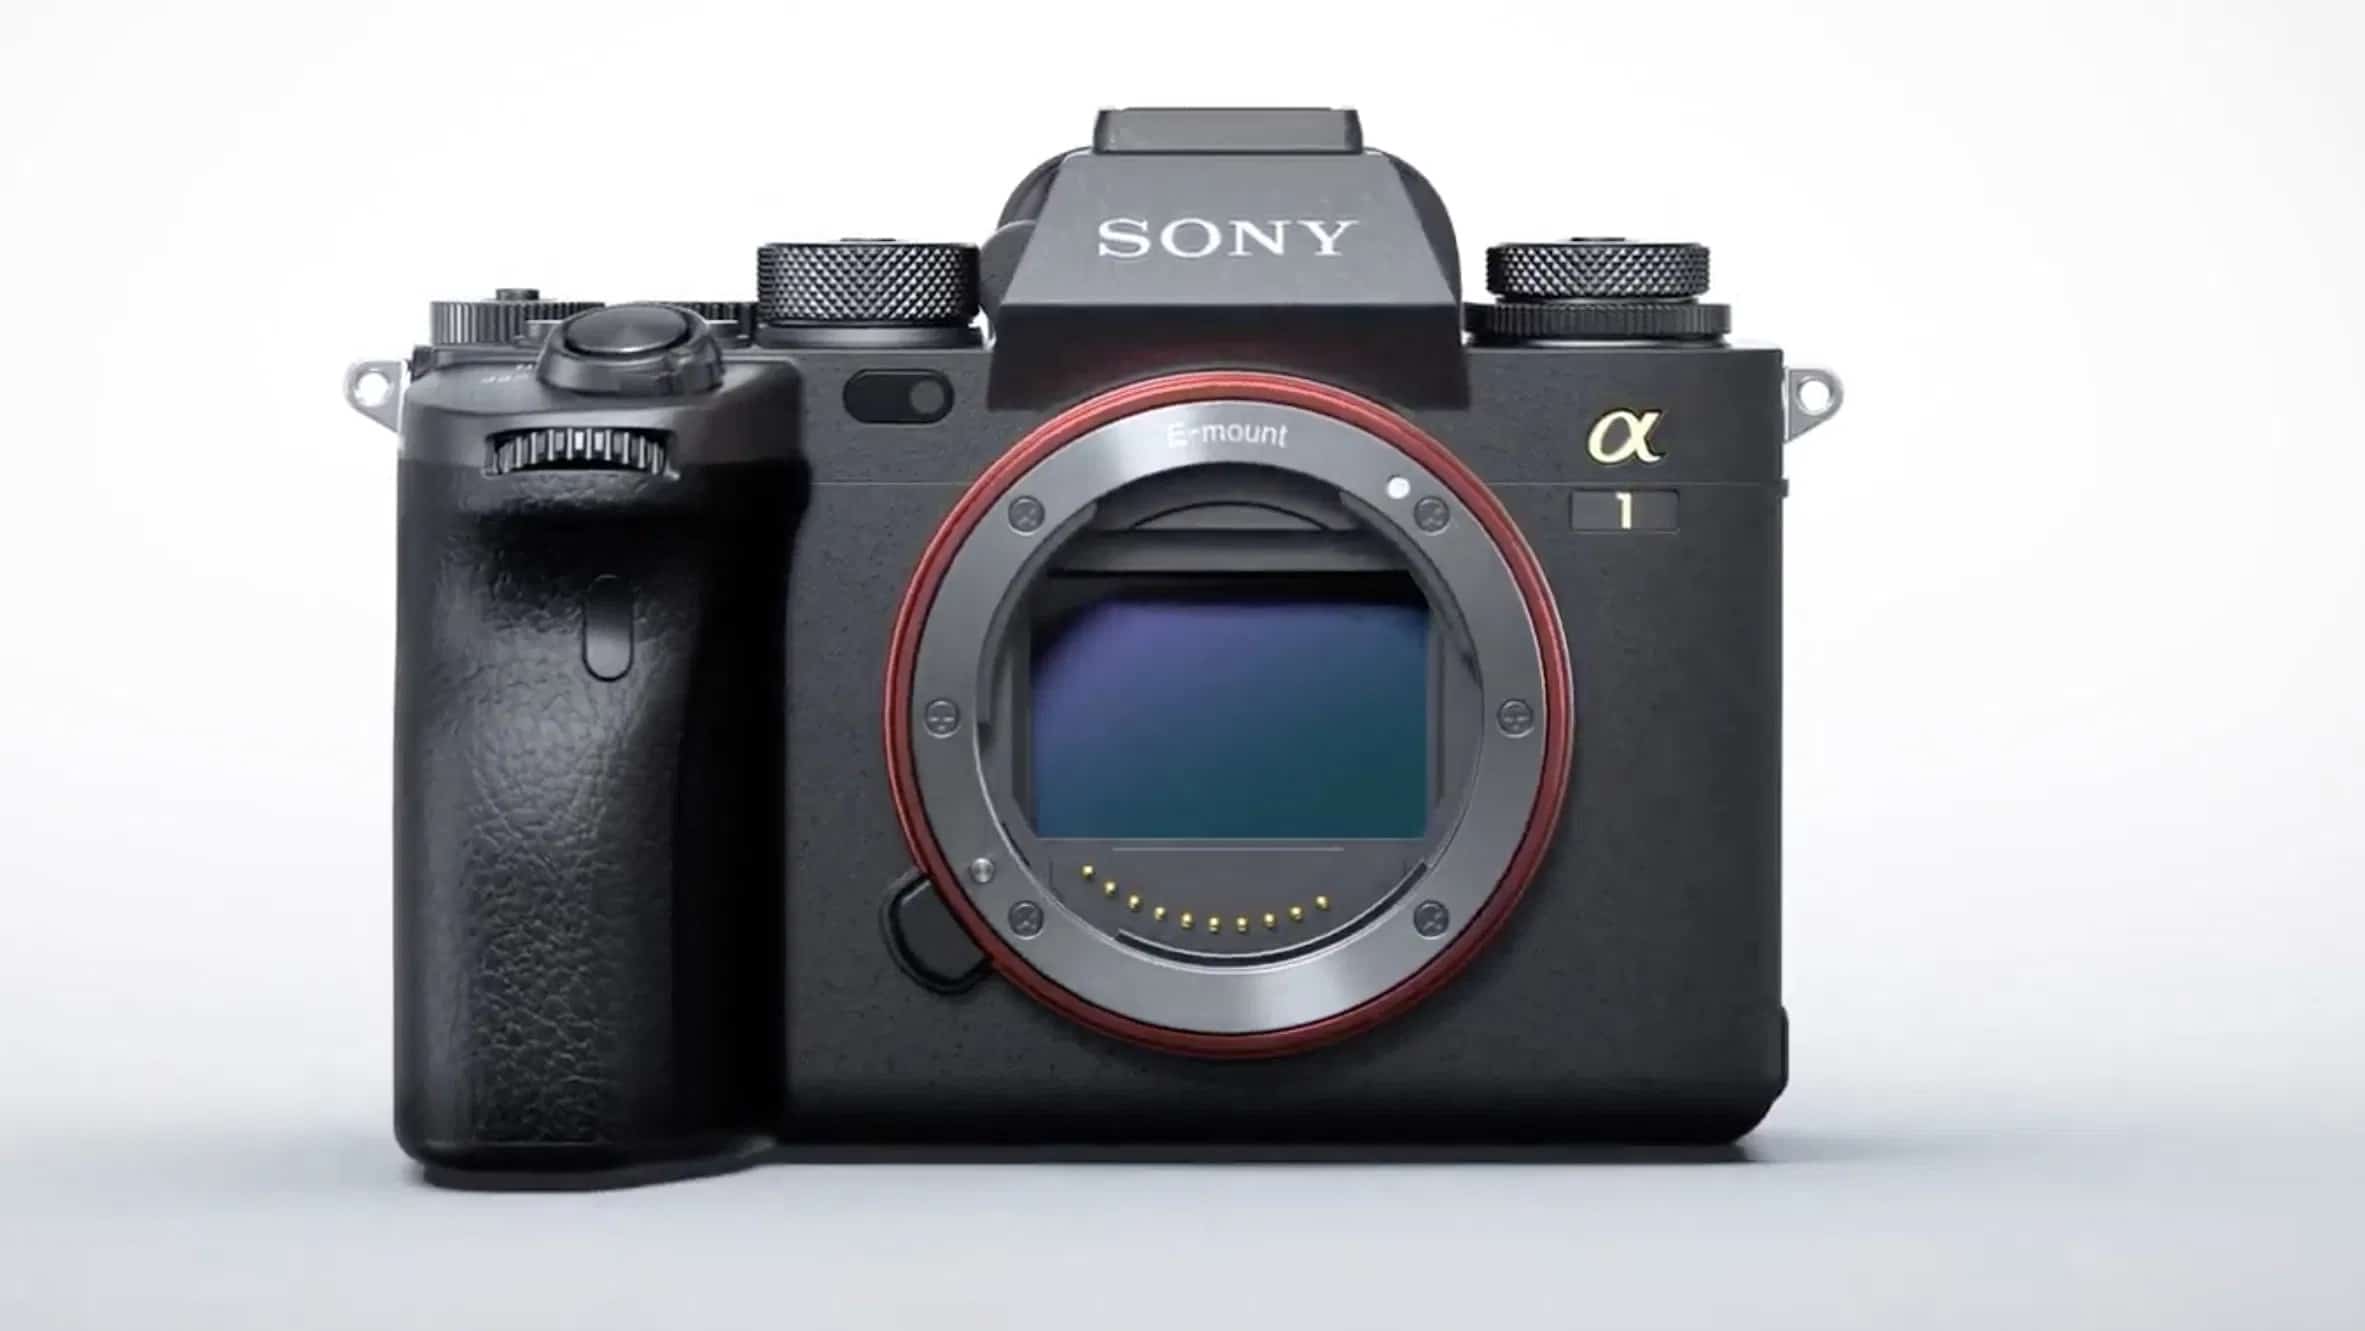 Nên chọn máy nào giữa Sony A1 50MP với Fujifilm GFX 100S 100MP?